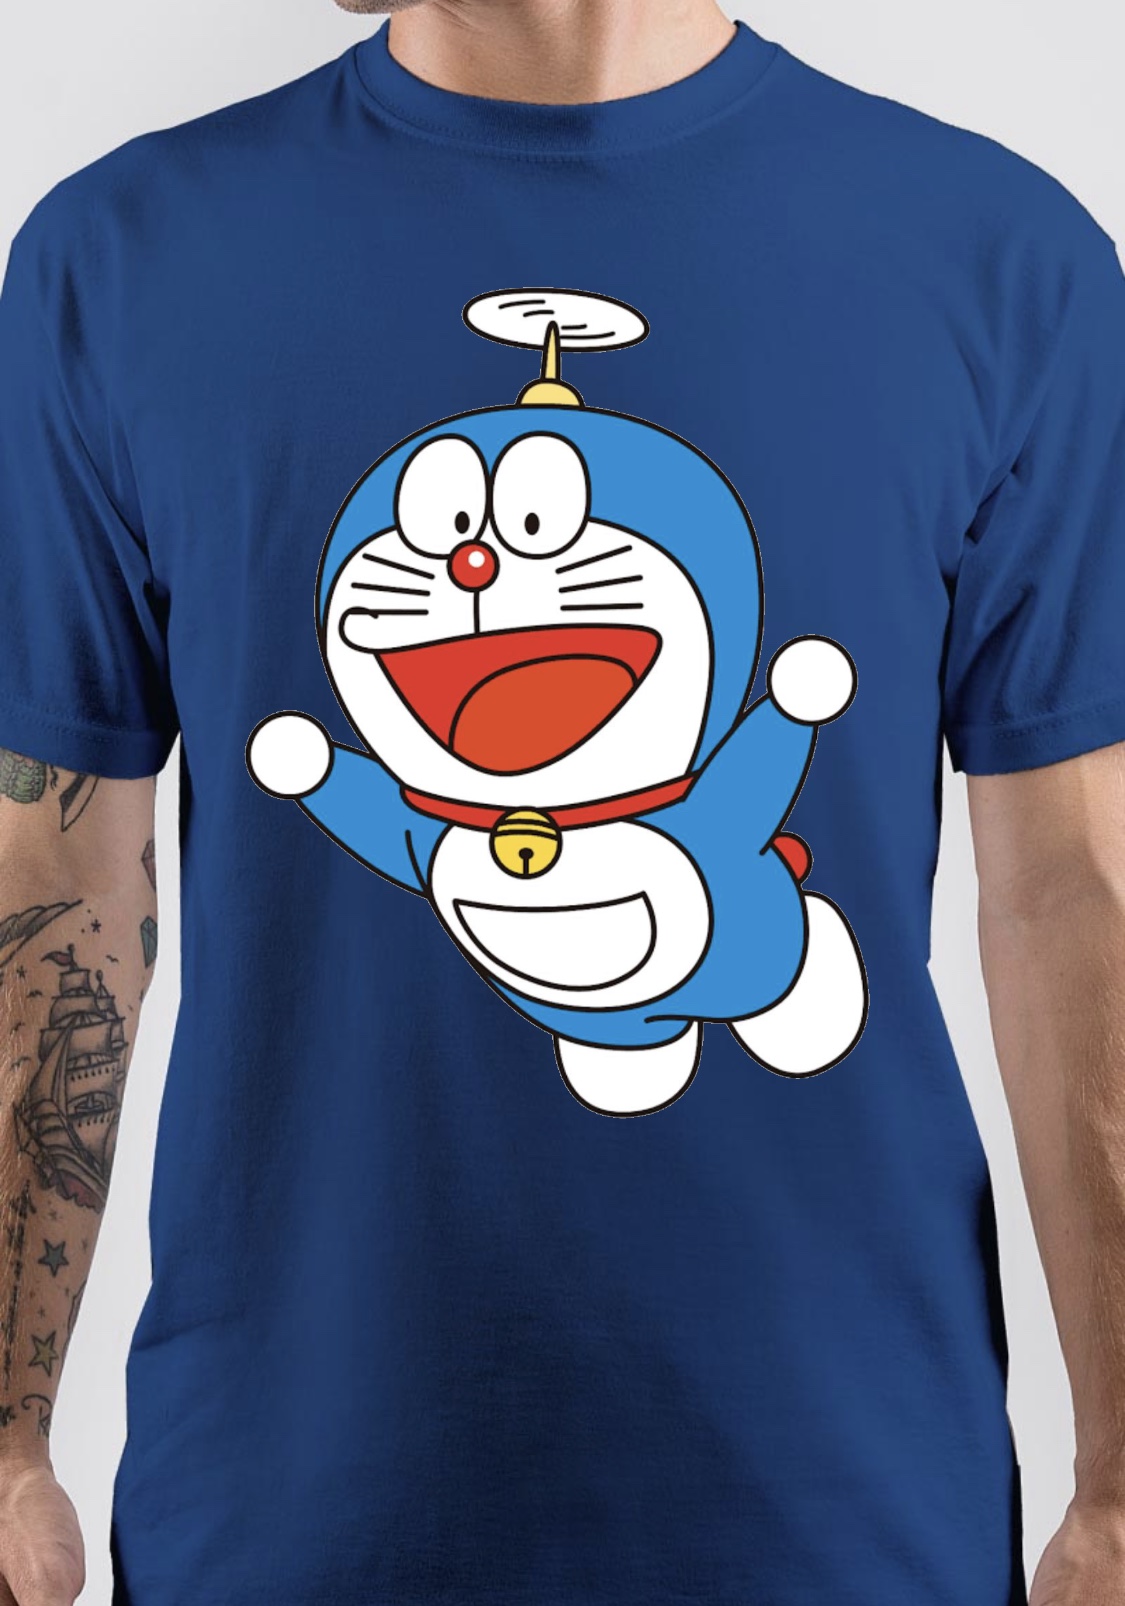 Doraemon | By TattooFacebook